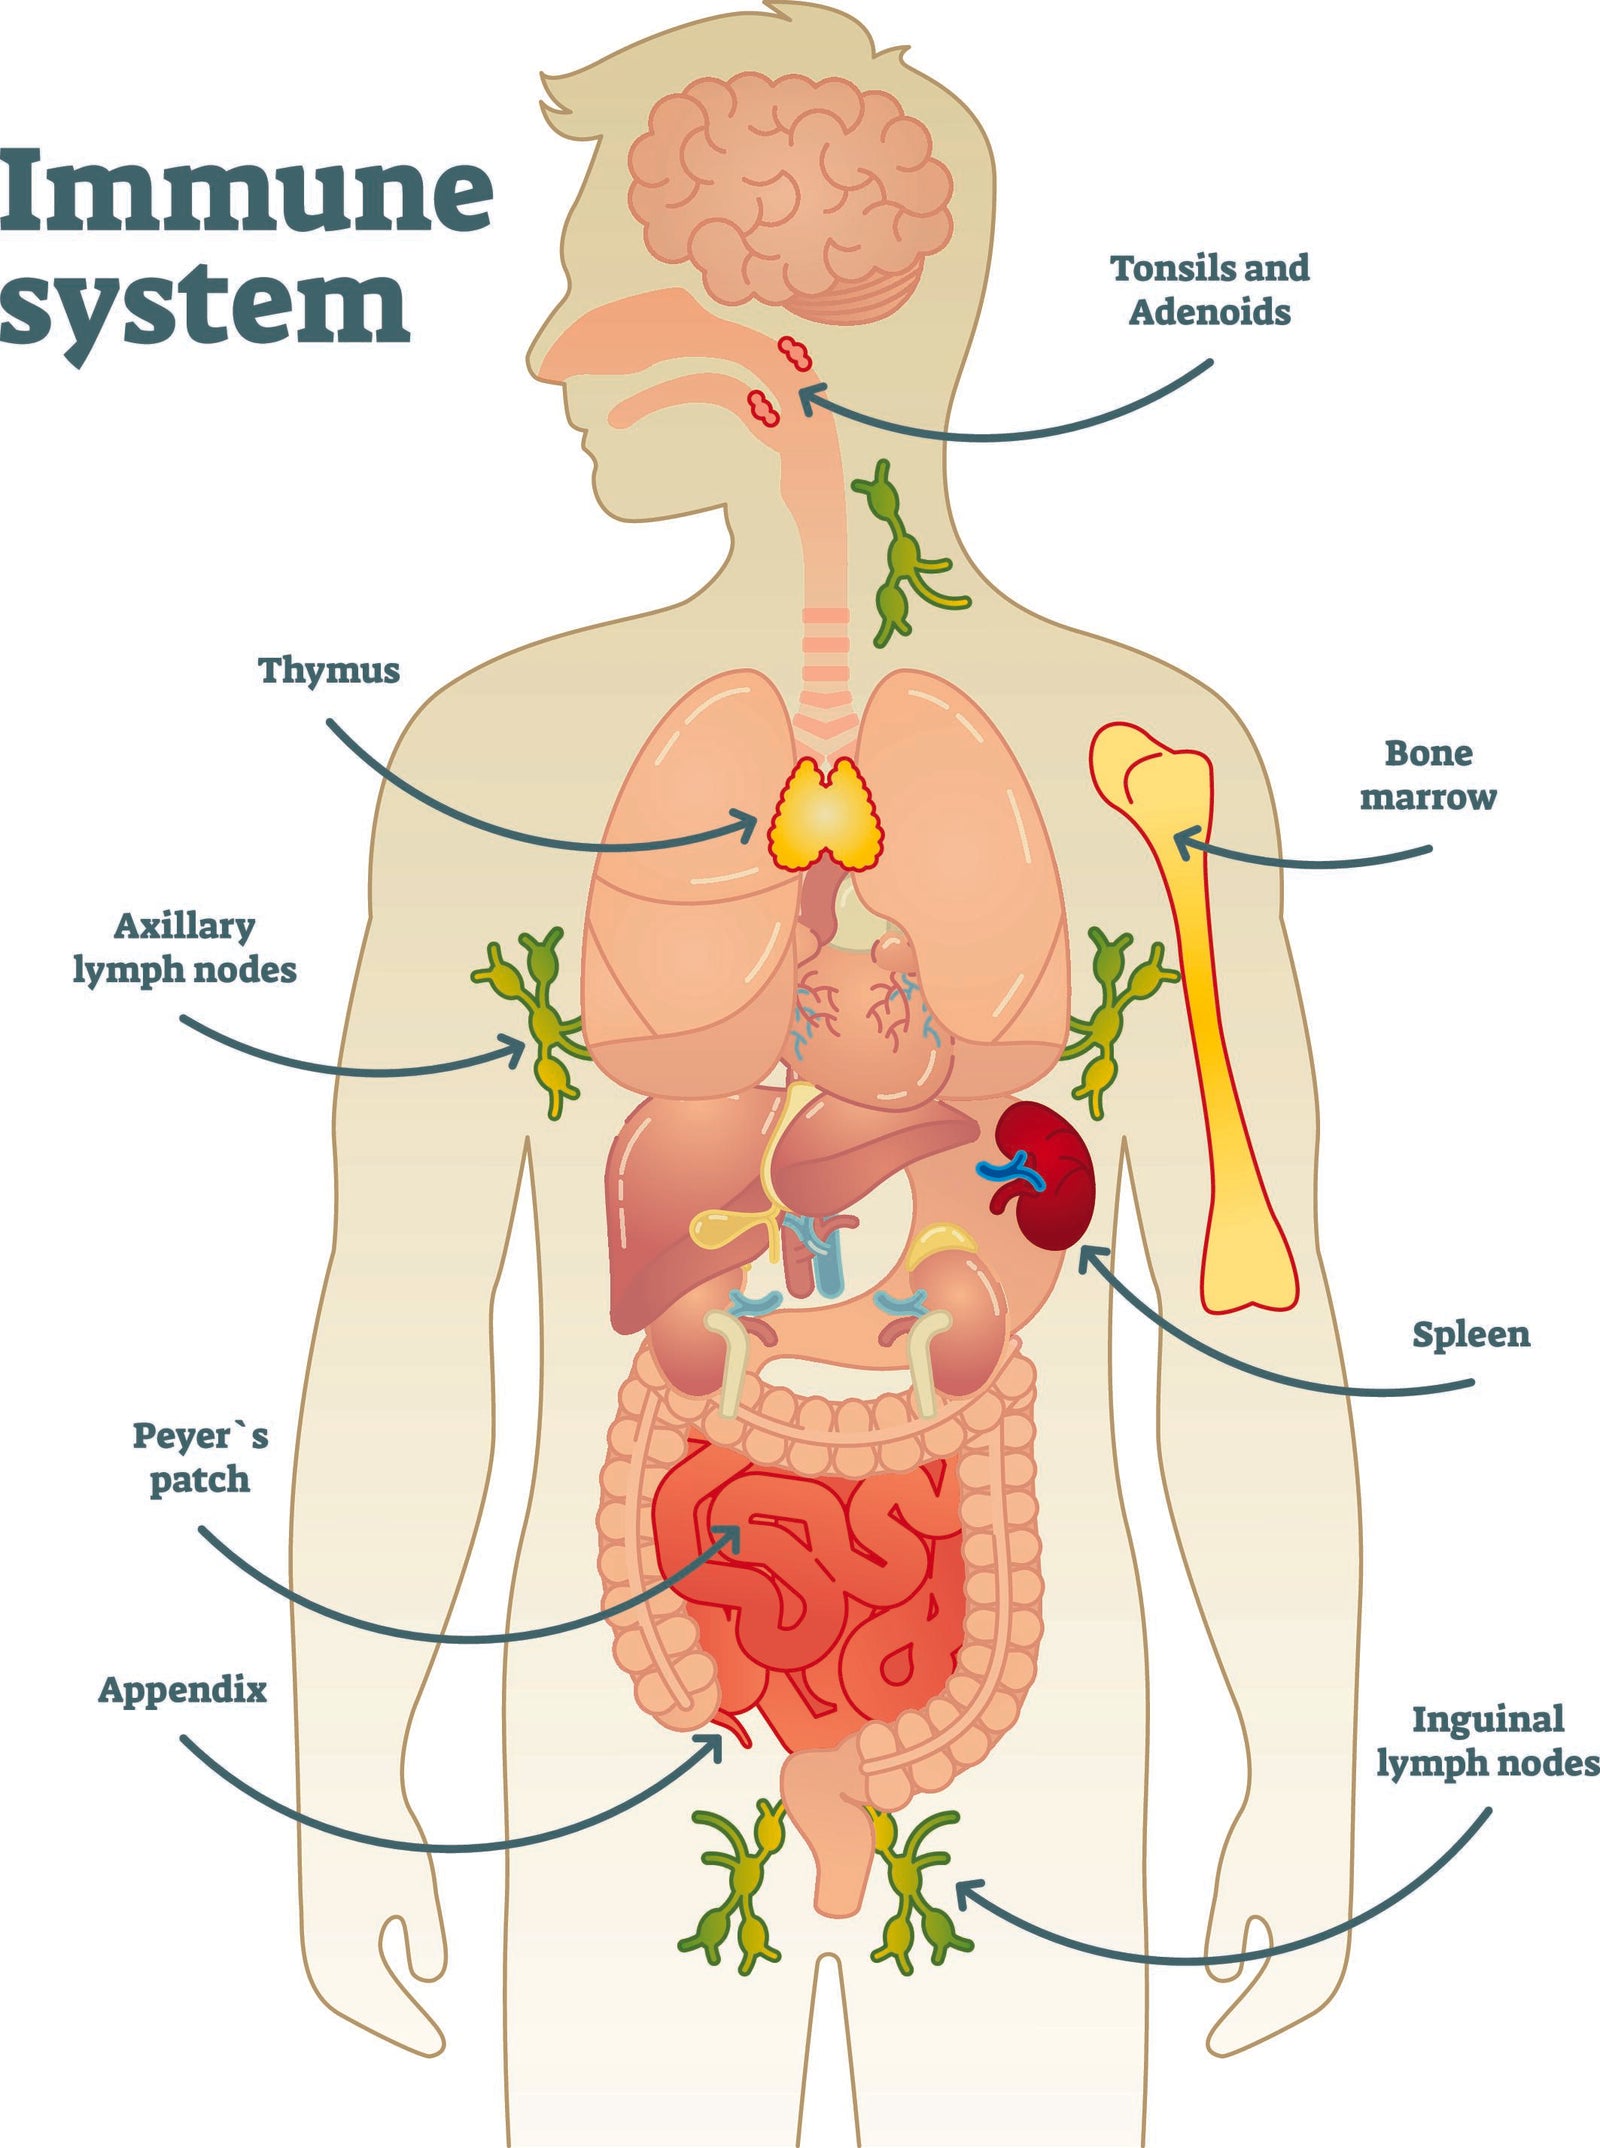 Das Immunsystem und sein internes Netwerk